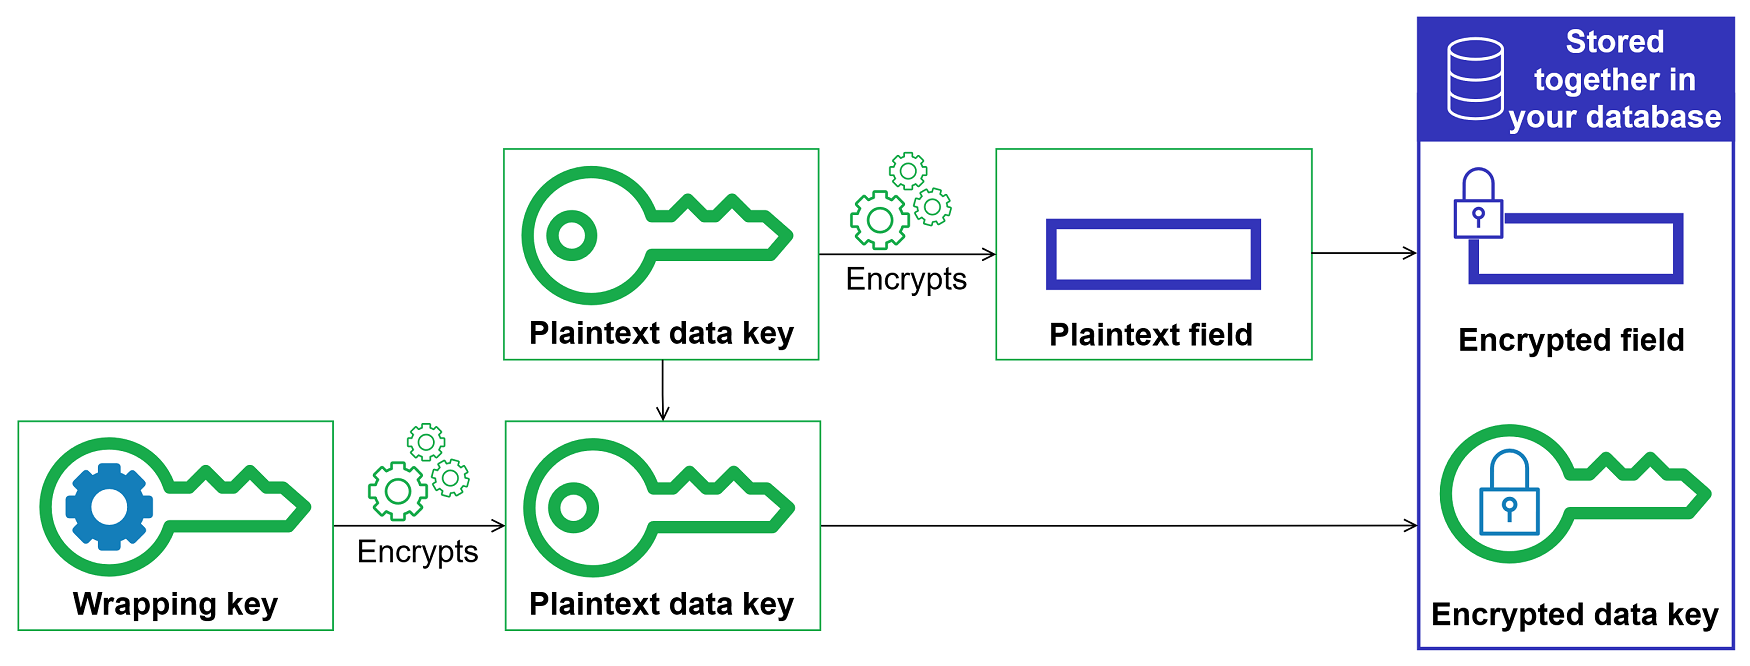 Criptografia de envelopes com o SDK AWS de criptografia de banco de dados